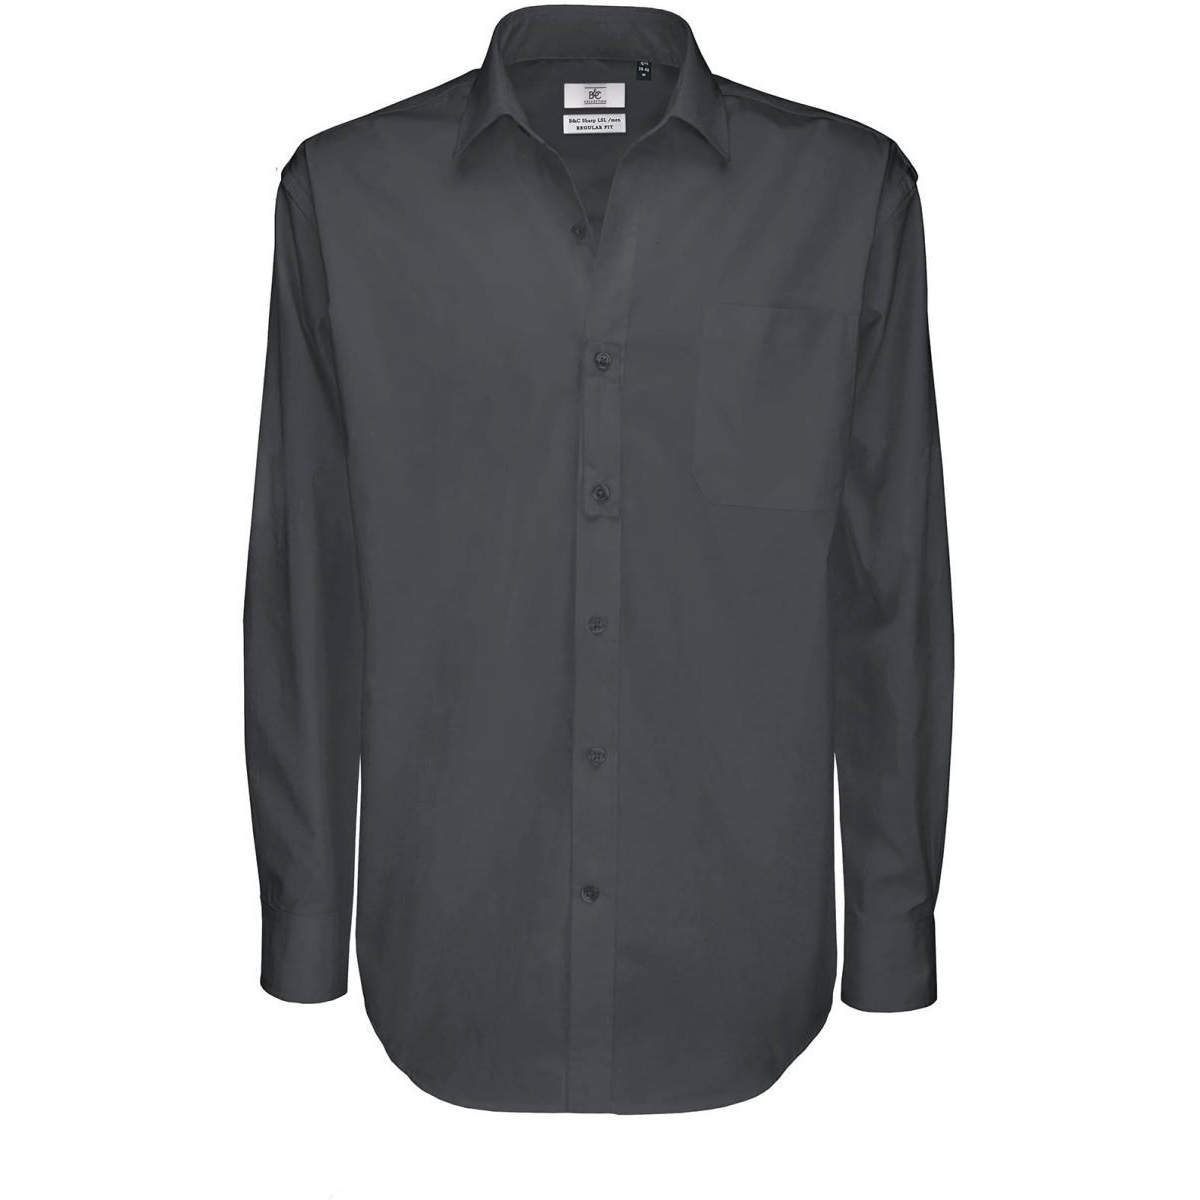 Pánská keprová košile B&C Sharp s dlouhým rukávem - tmavě šedá, 3XL